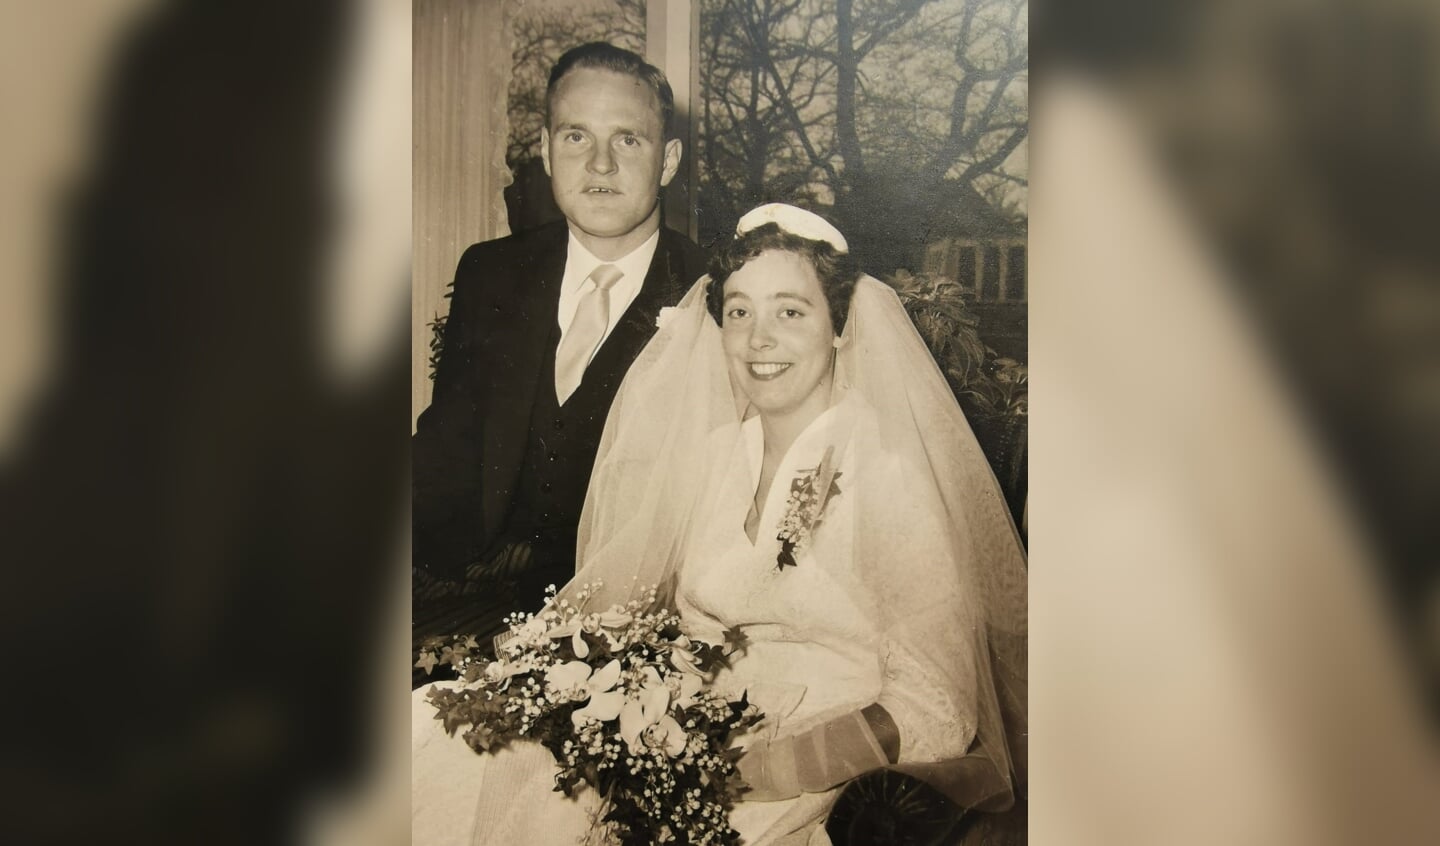 Joke ne Piet Brittijn bij huwelijk, zestig jaar geleden. Foto: Familie Brittijn